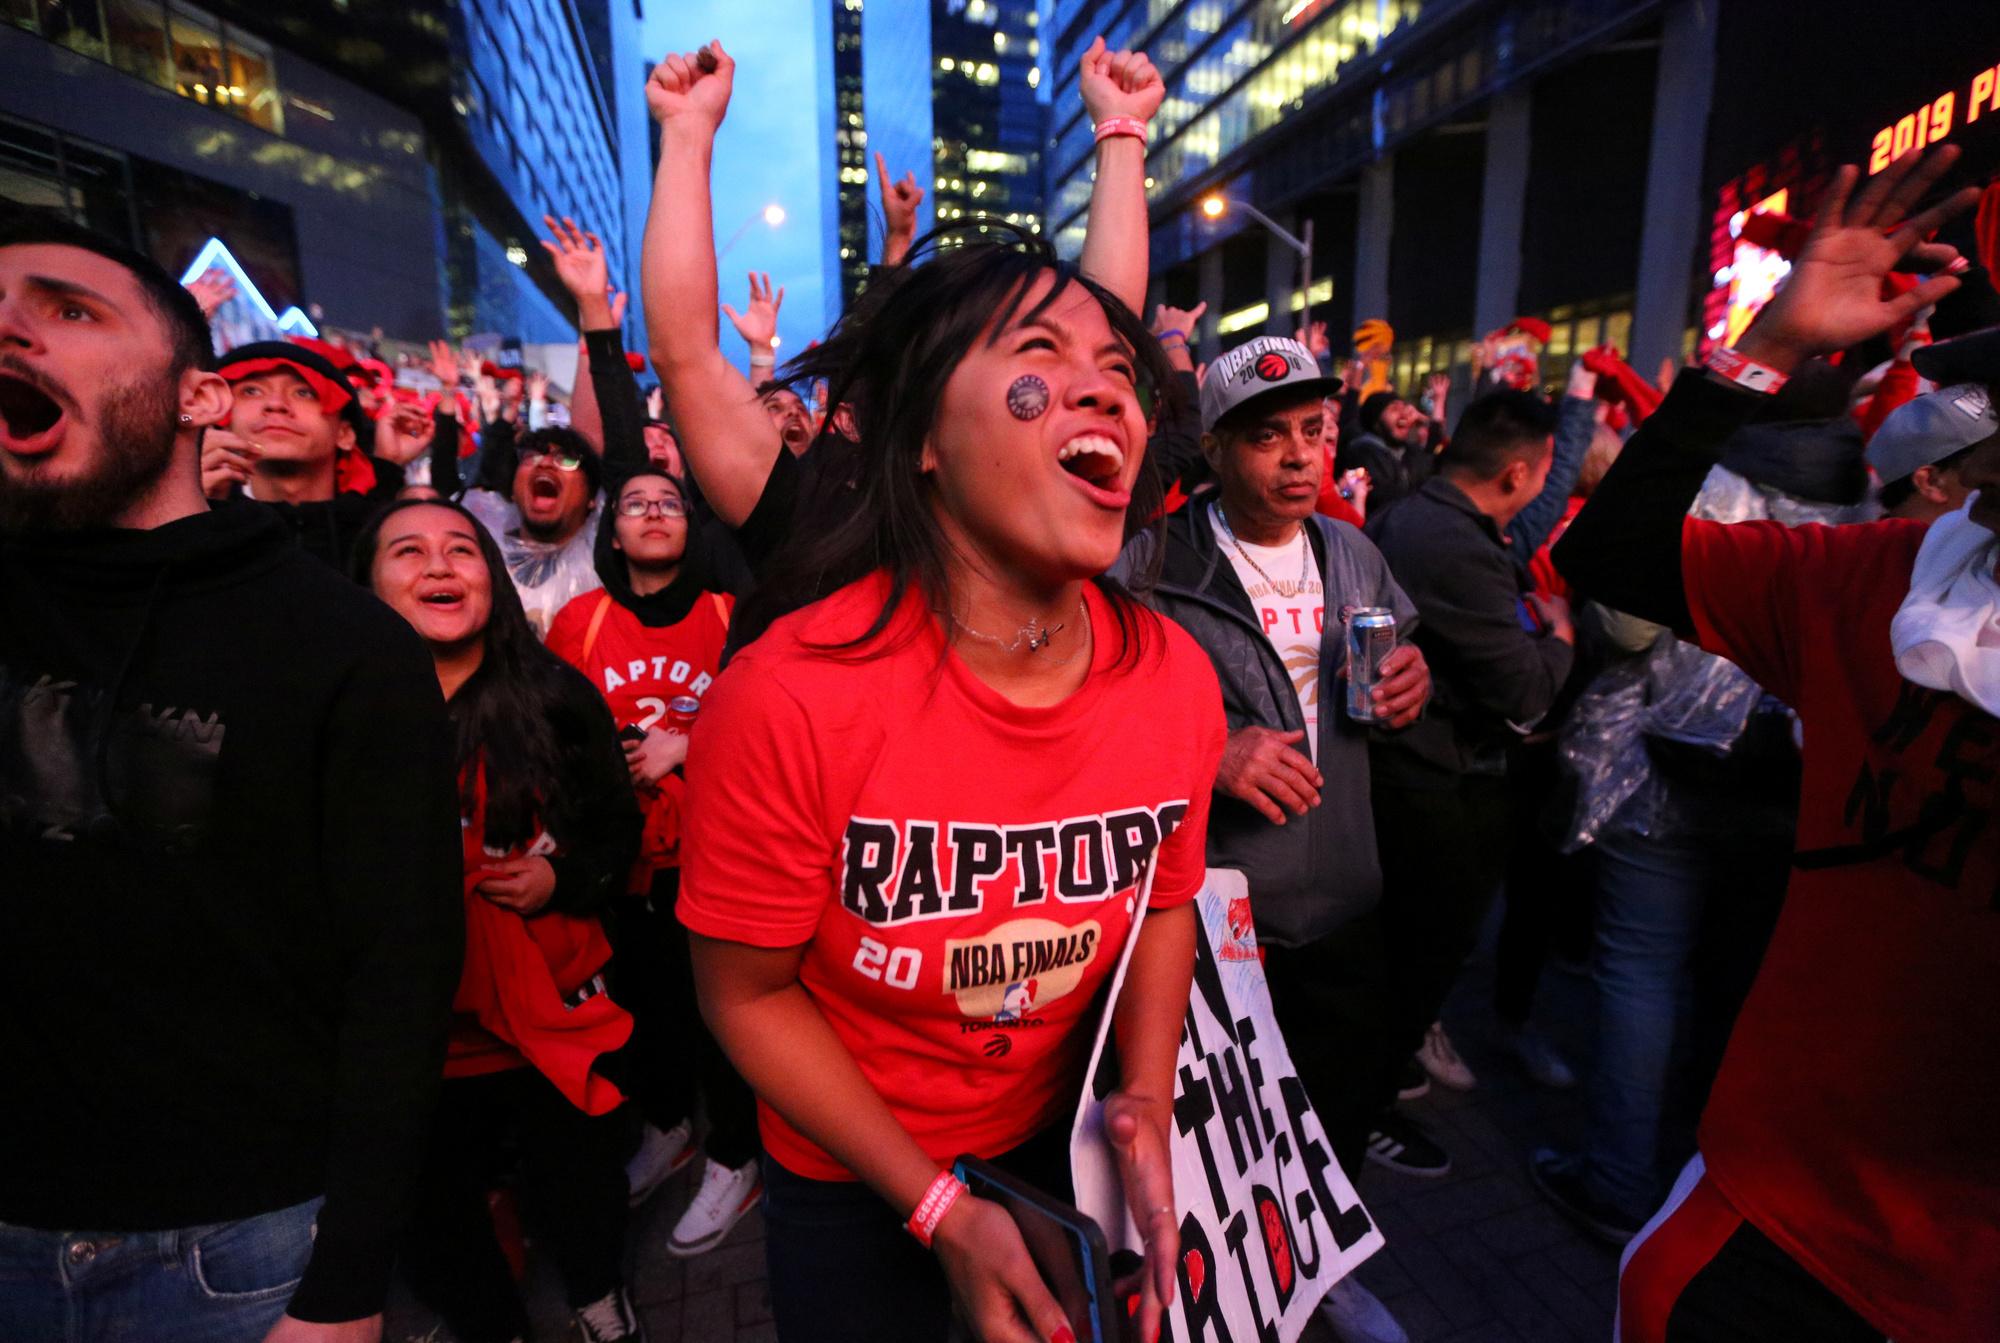 Toronto kan rekenen op een enorme groep fans, de voorlaatste wedstrijd van deze play-offs werd op televisie bekeken door maar liefst 13,4 miljoen Canadezen, waardoor het het meest bekeken programma van het jaar in Canada werd.